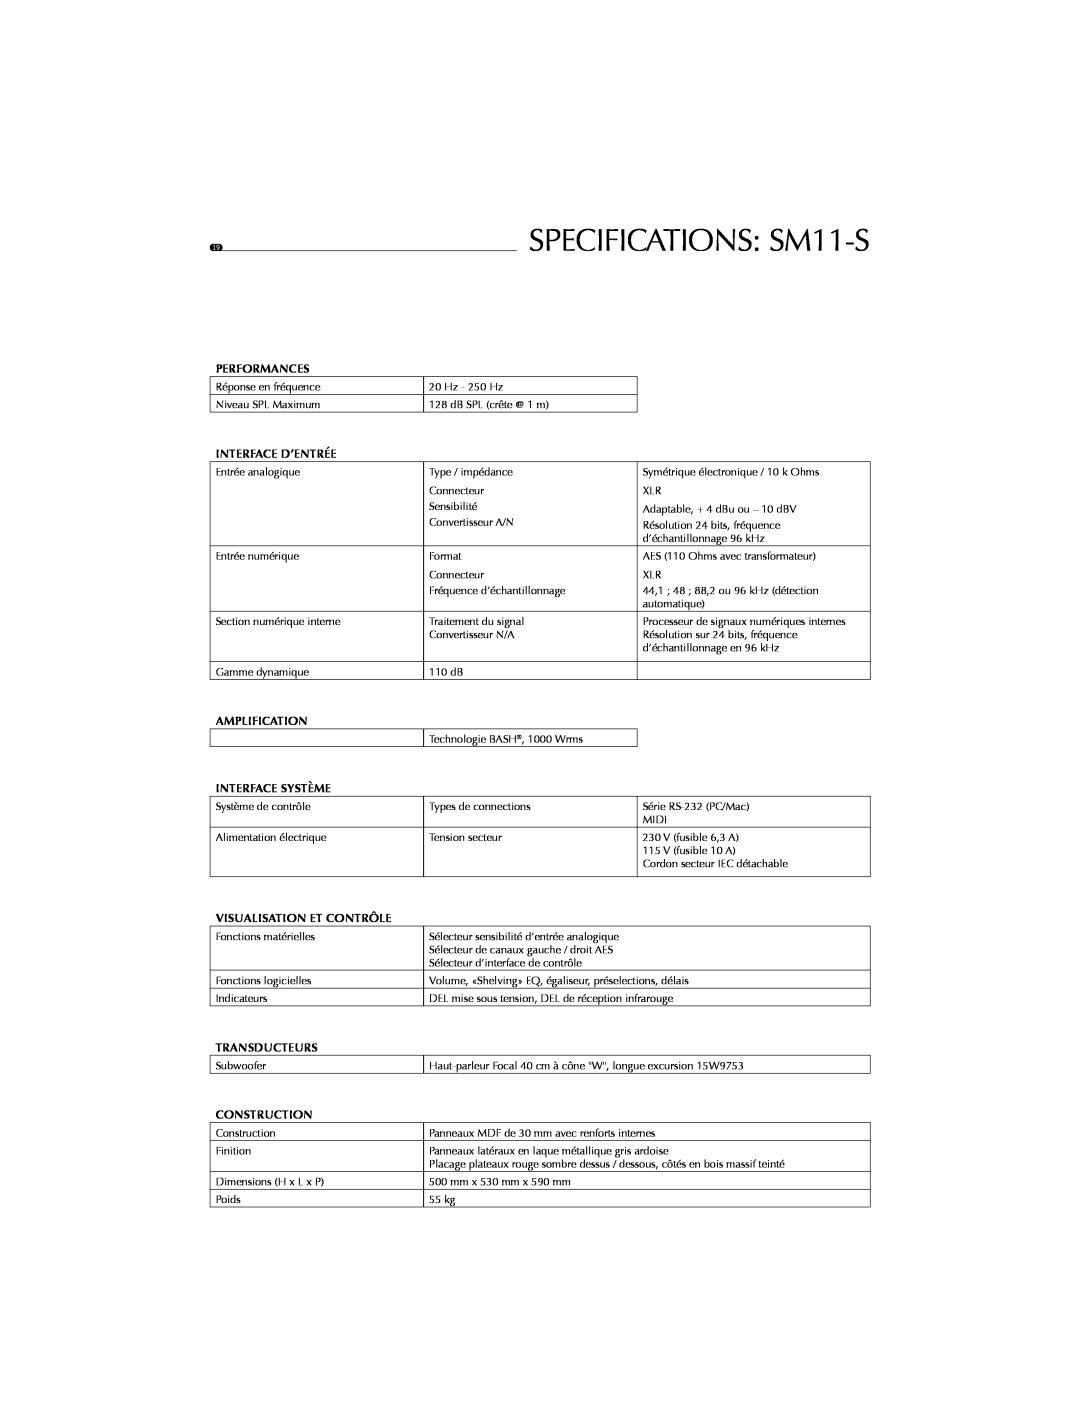 Focal SPECIFICATIONS SM11-S, Performances, Interface D’Entrée, Amplification, Interface Système, Transducteurs 